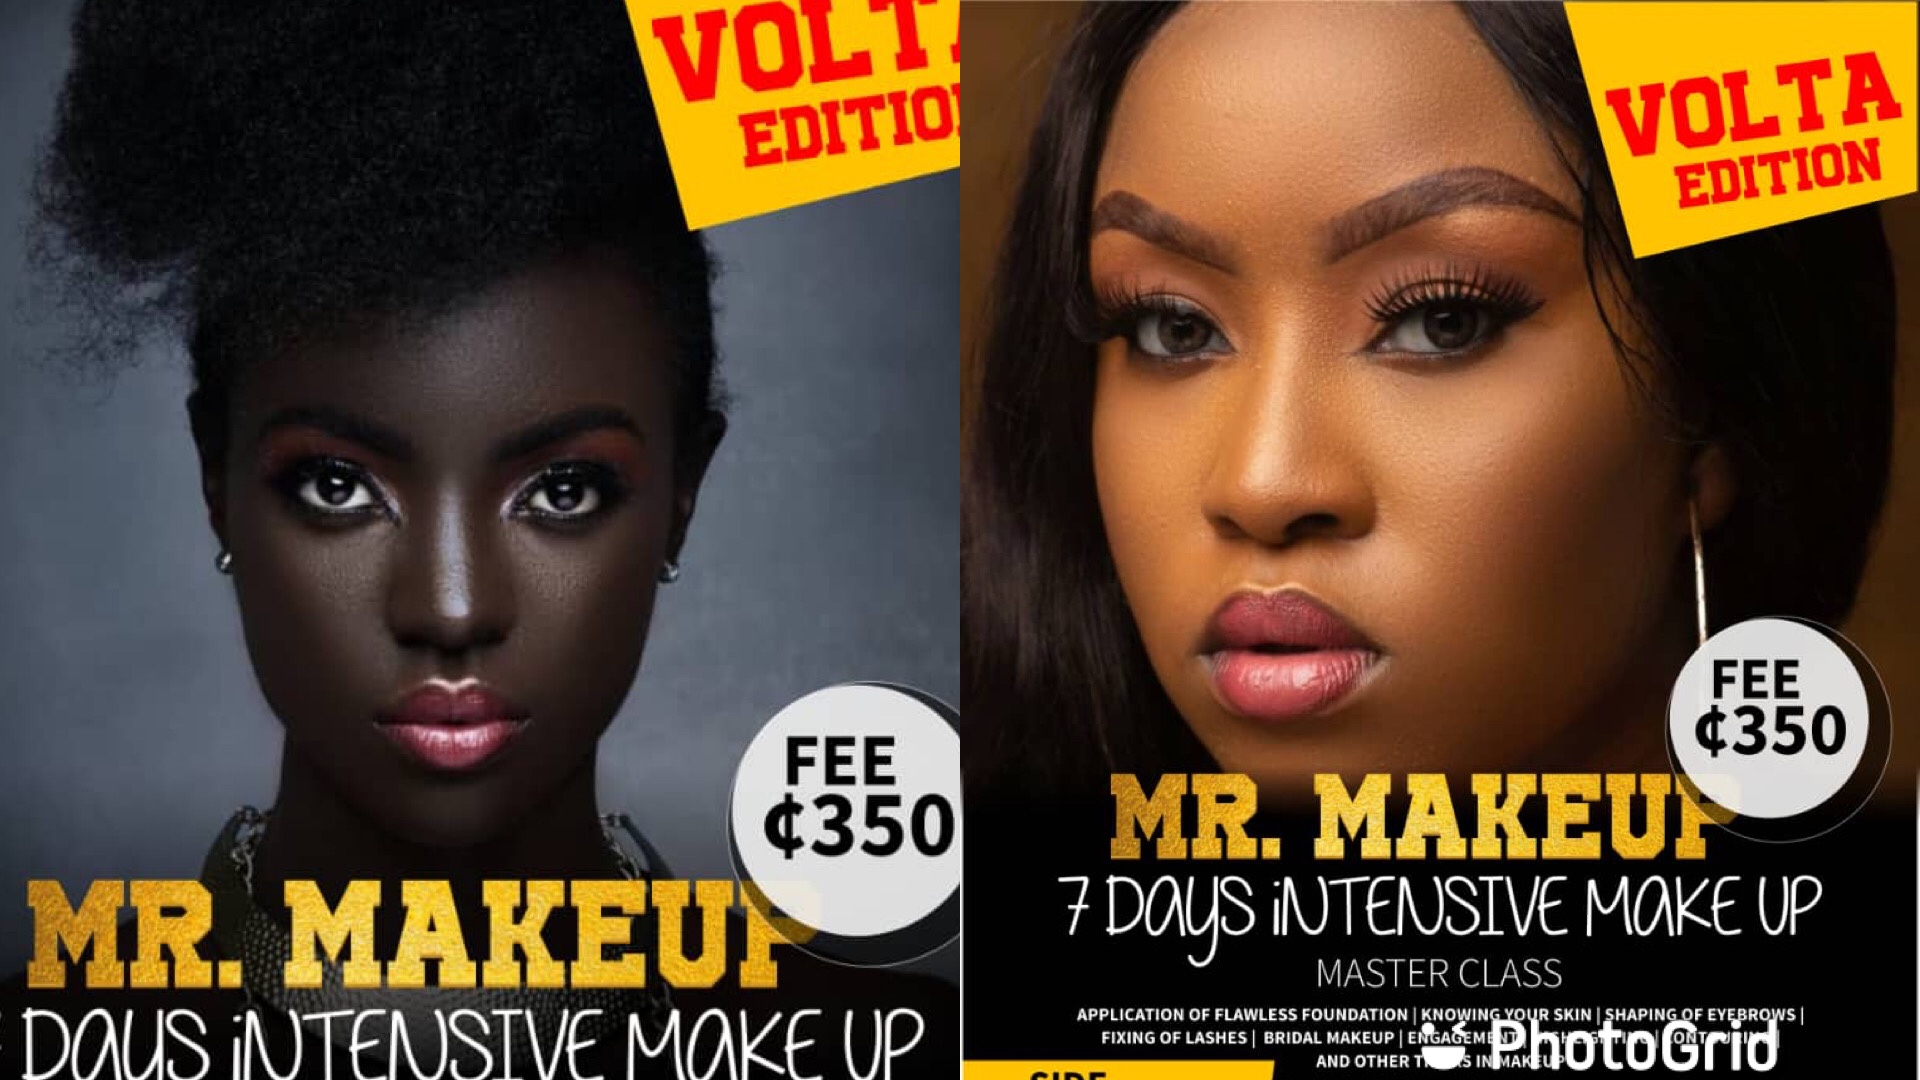 Mr Makeup 7 days intensive Makeup Master Class ( Volta Edition)